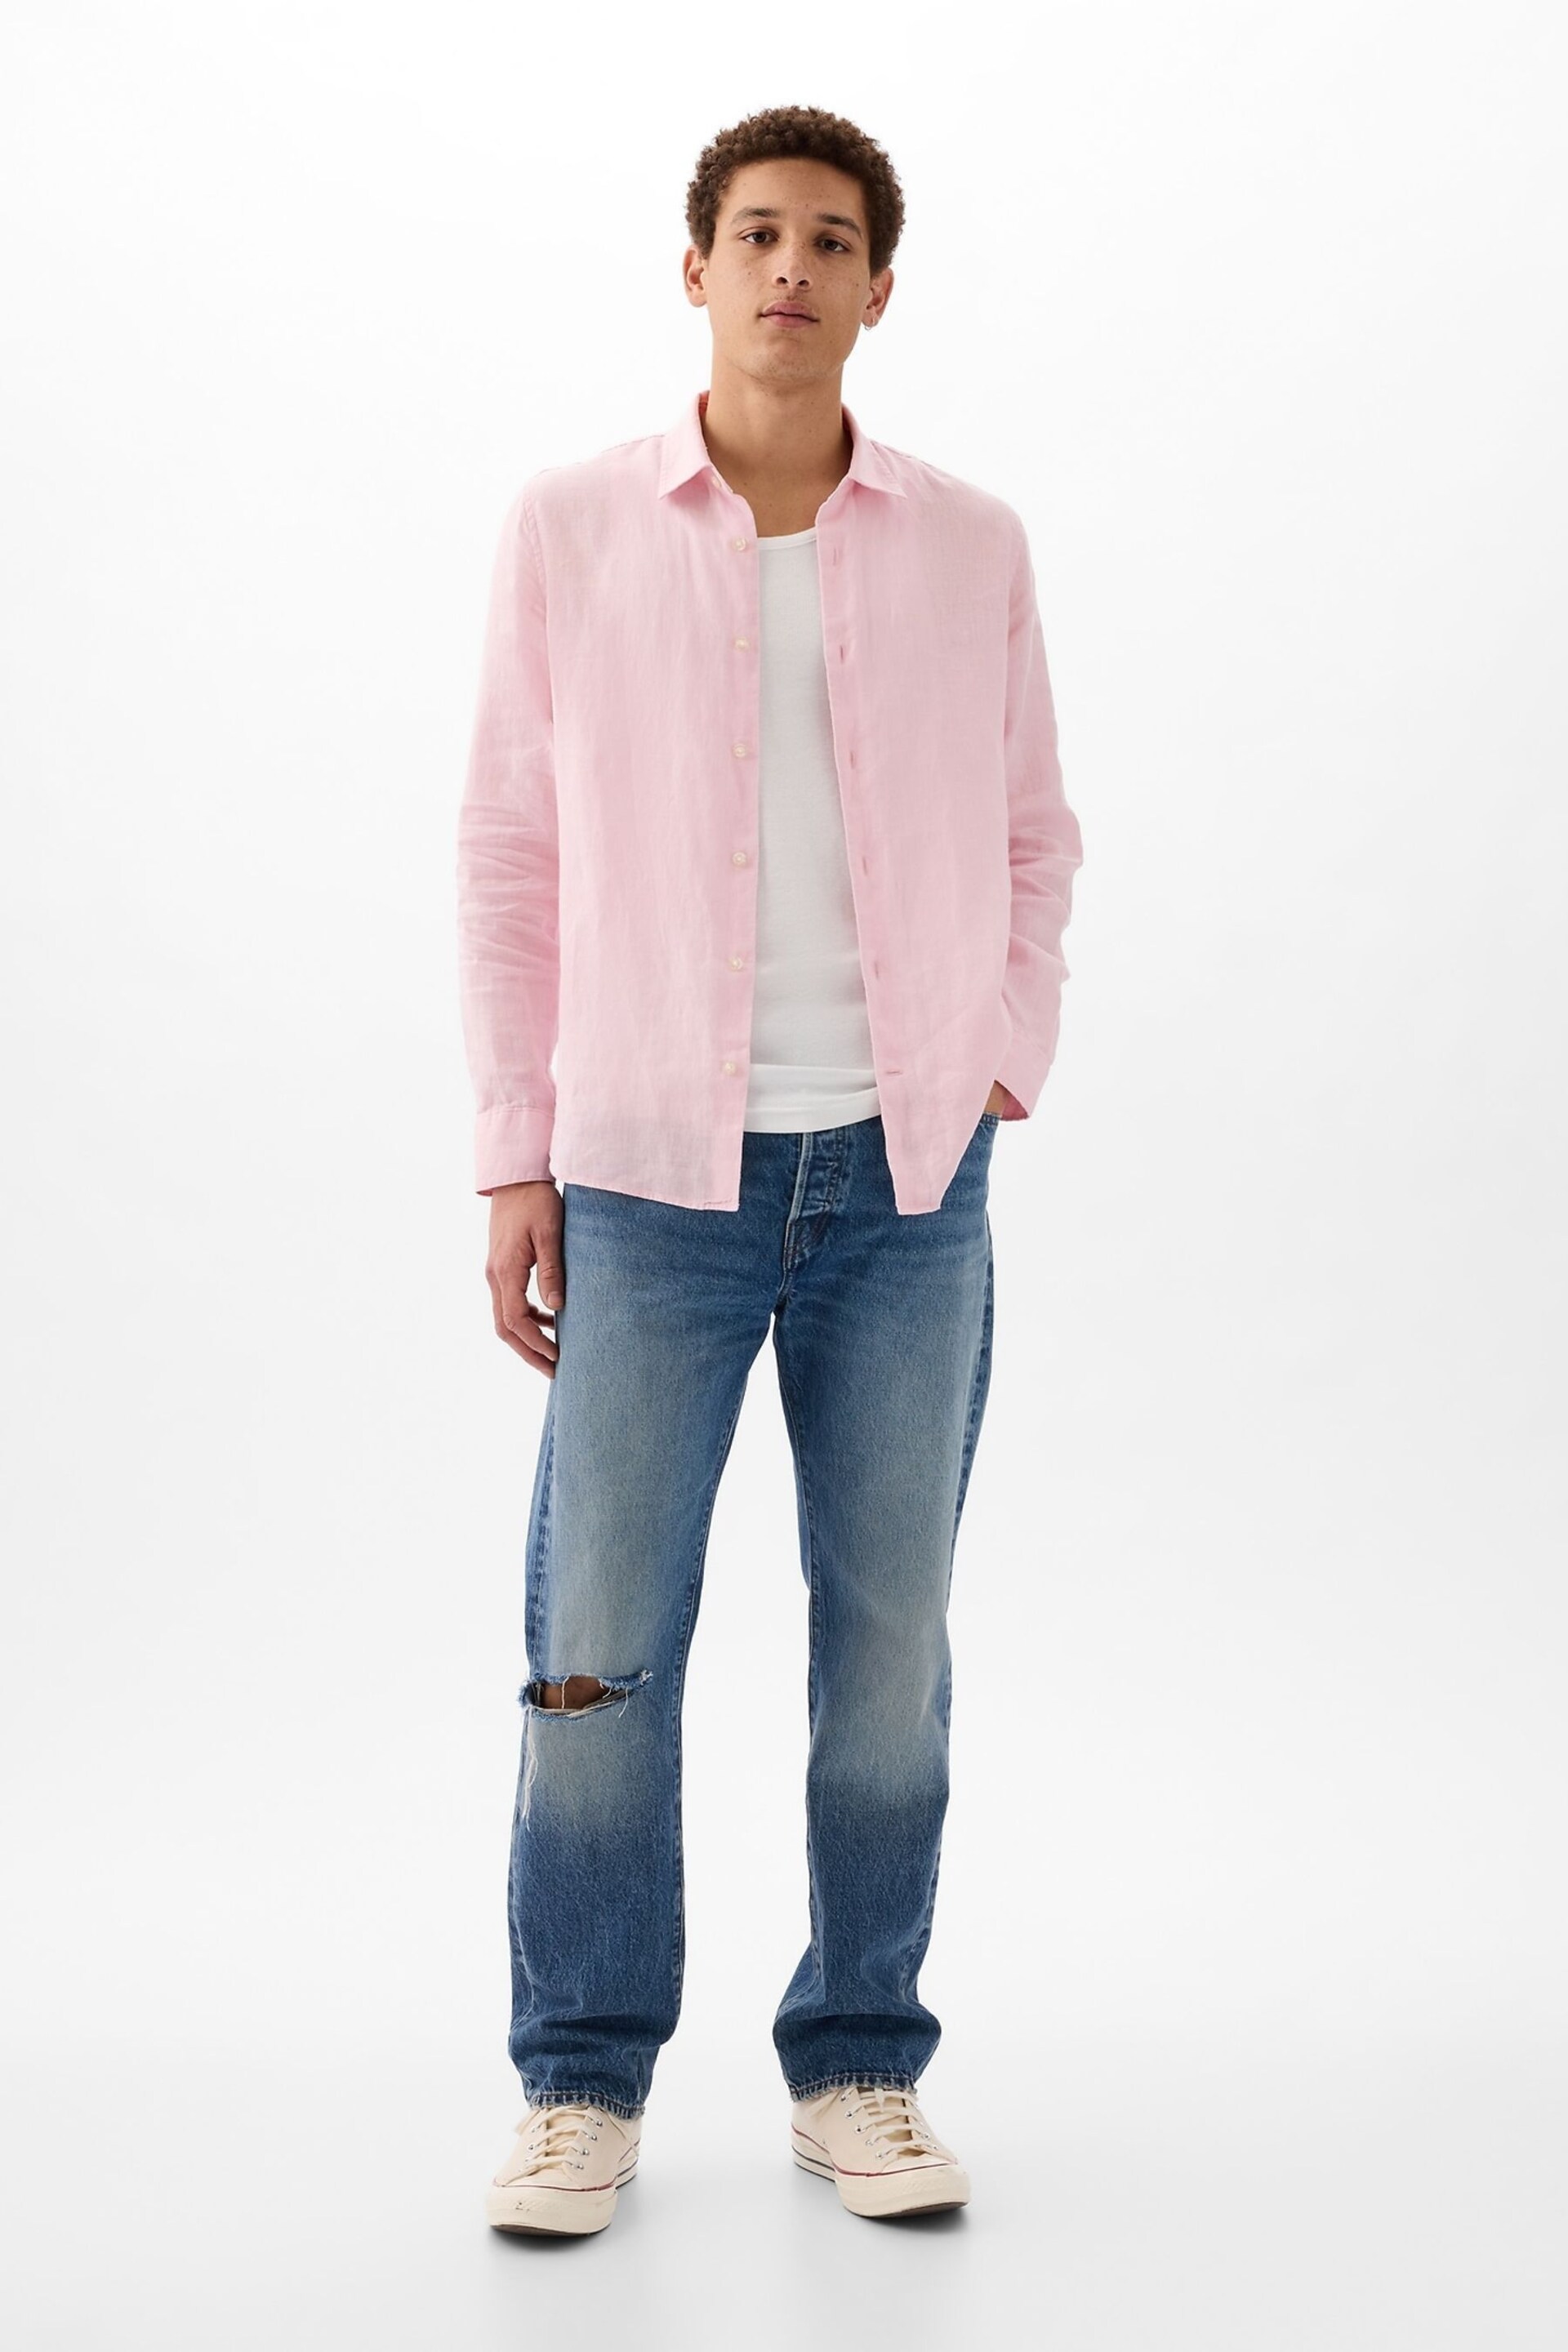 Gap Pink Soft Linen Long Sleeve Shirt - Image 3 of 3